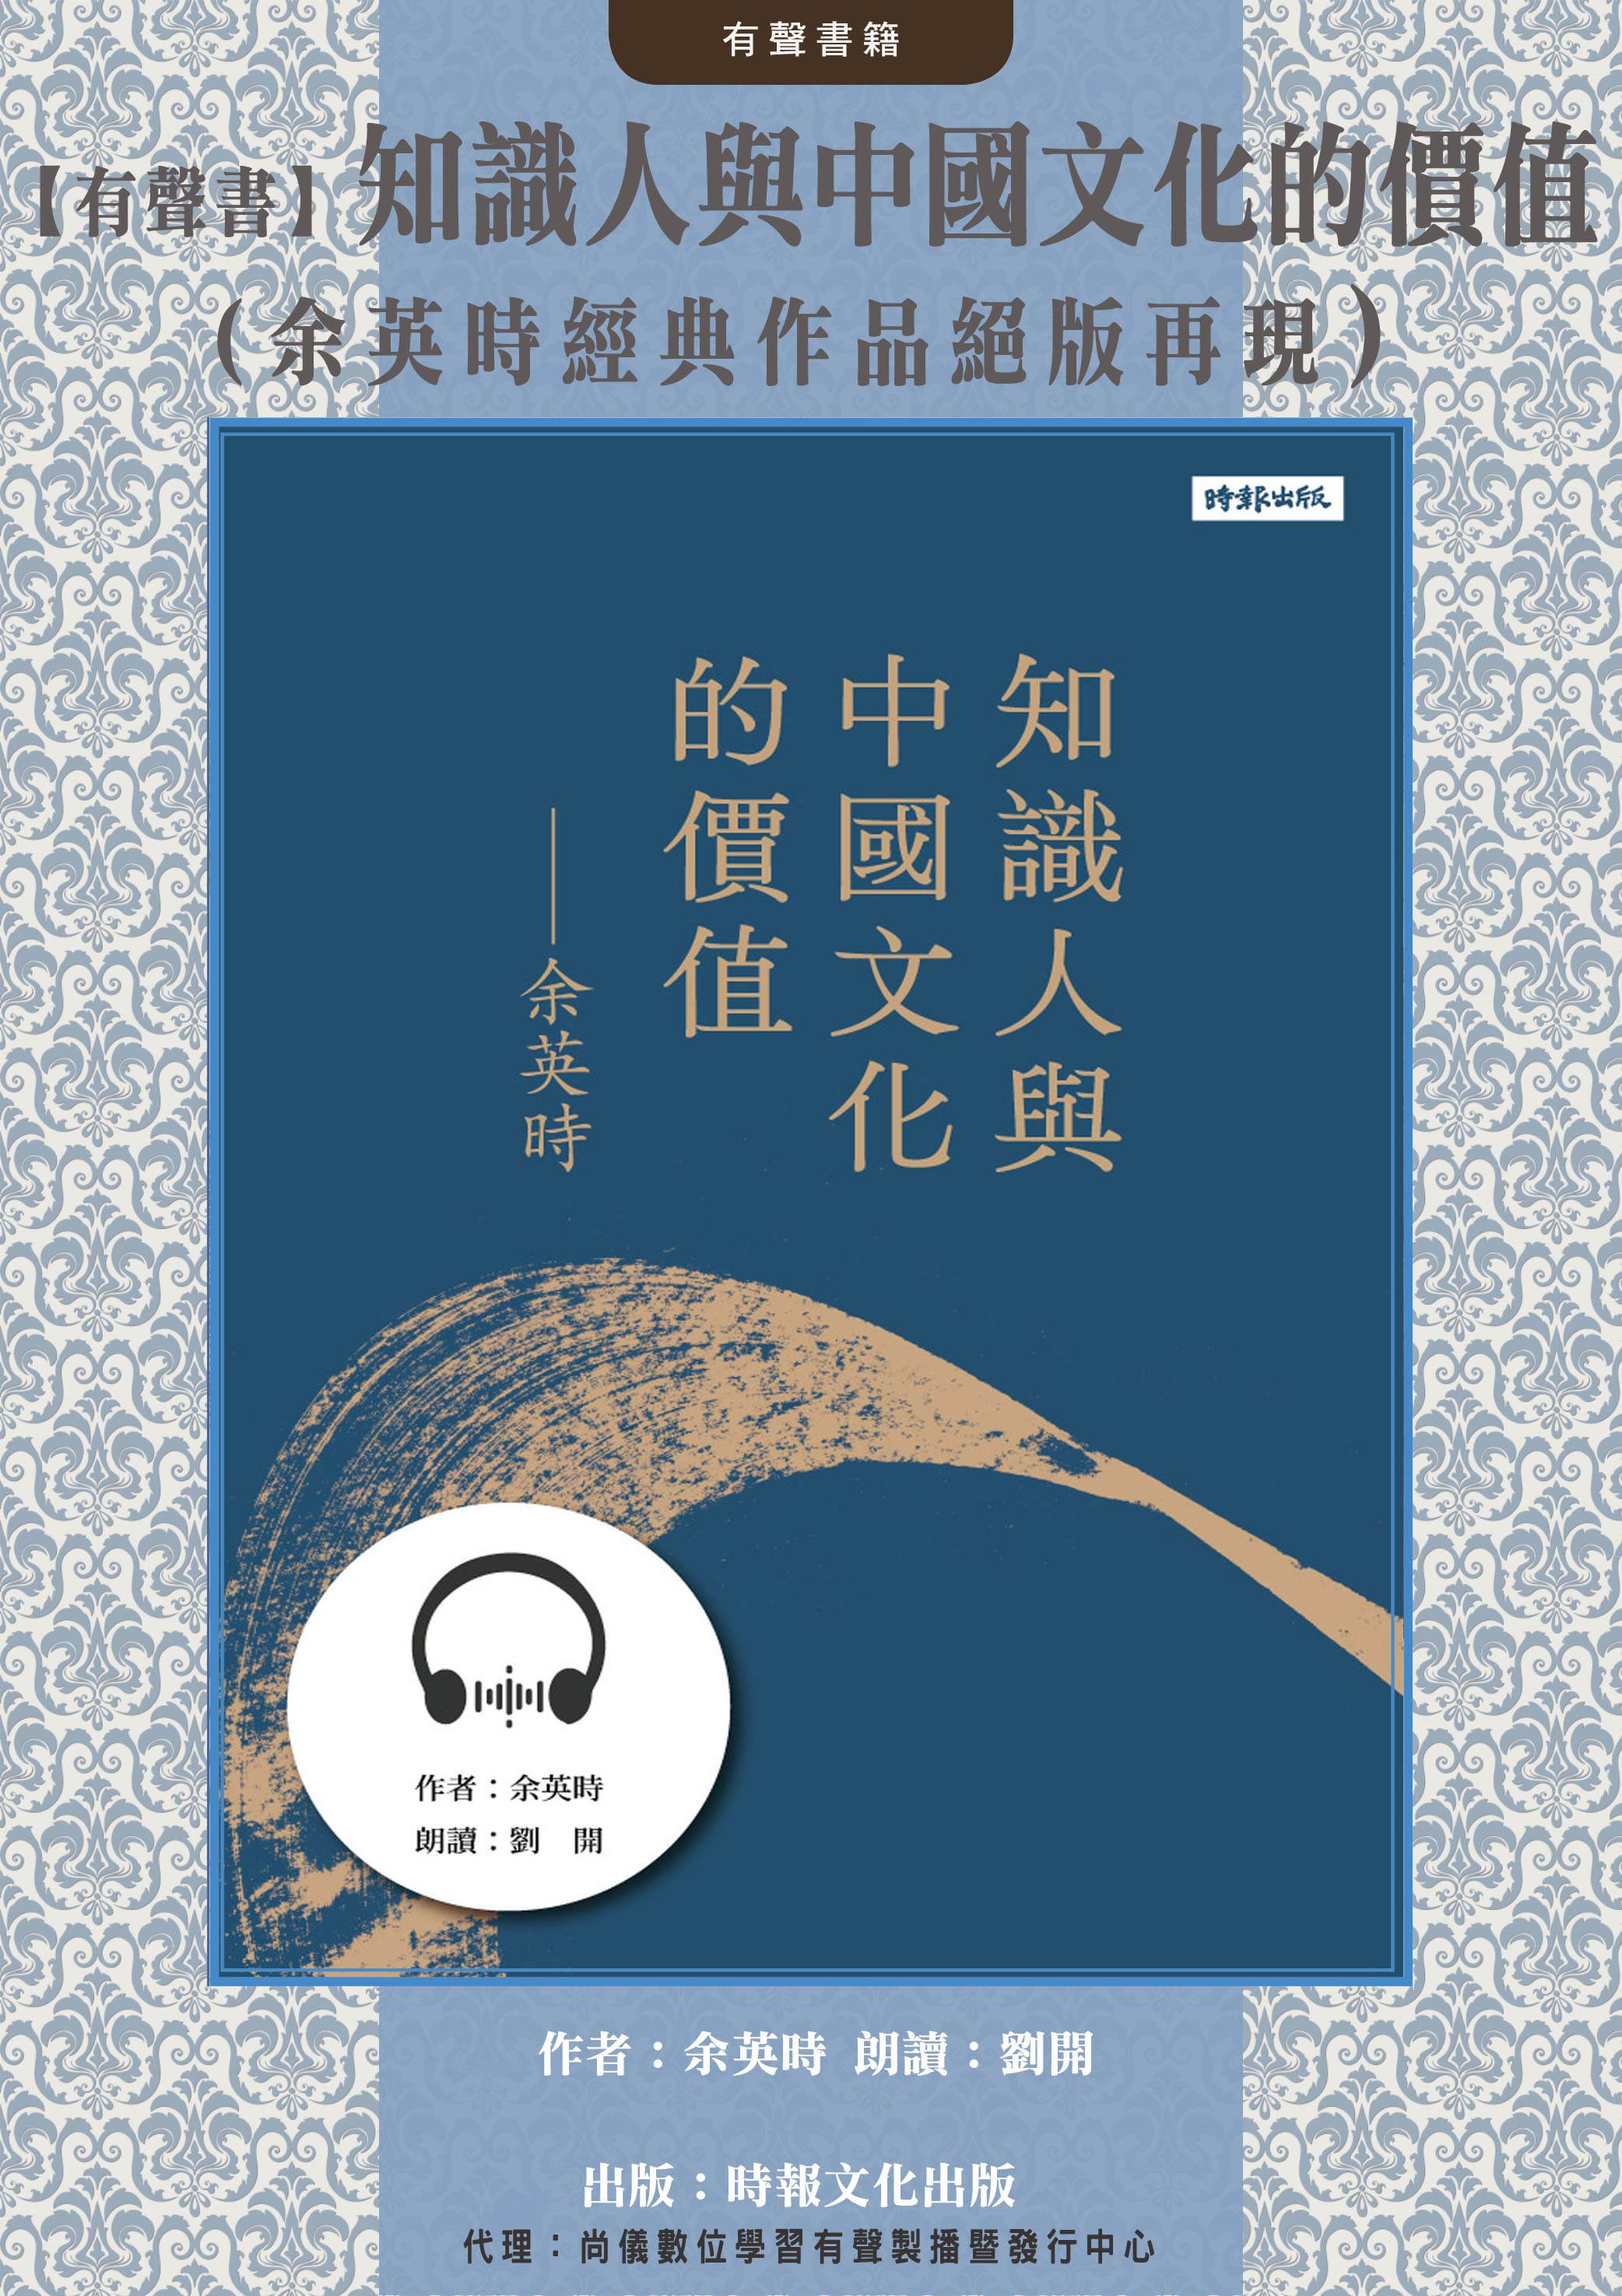 【有聲書】知識人與中國文化的價值（余英時經典作品絕版再現）封面圖